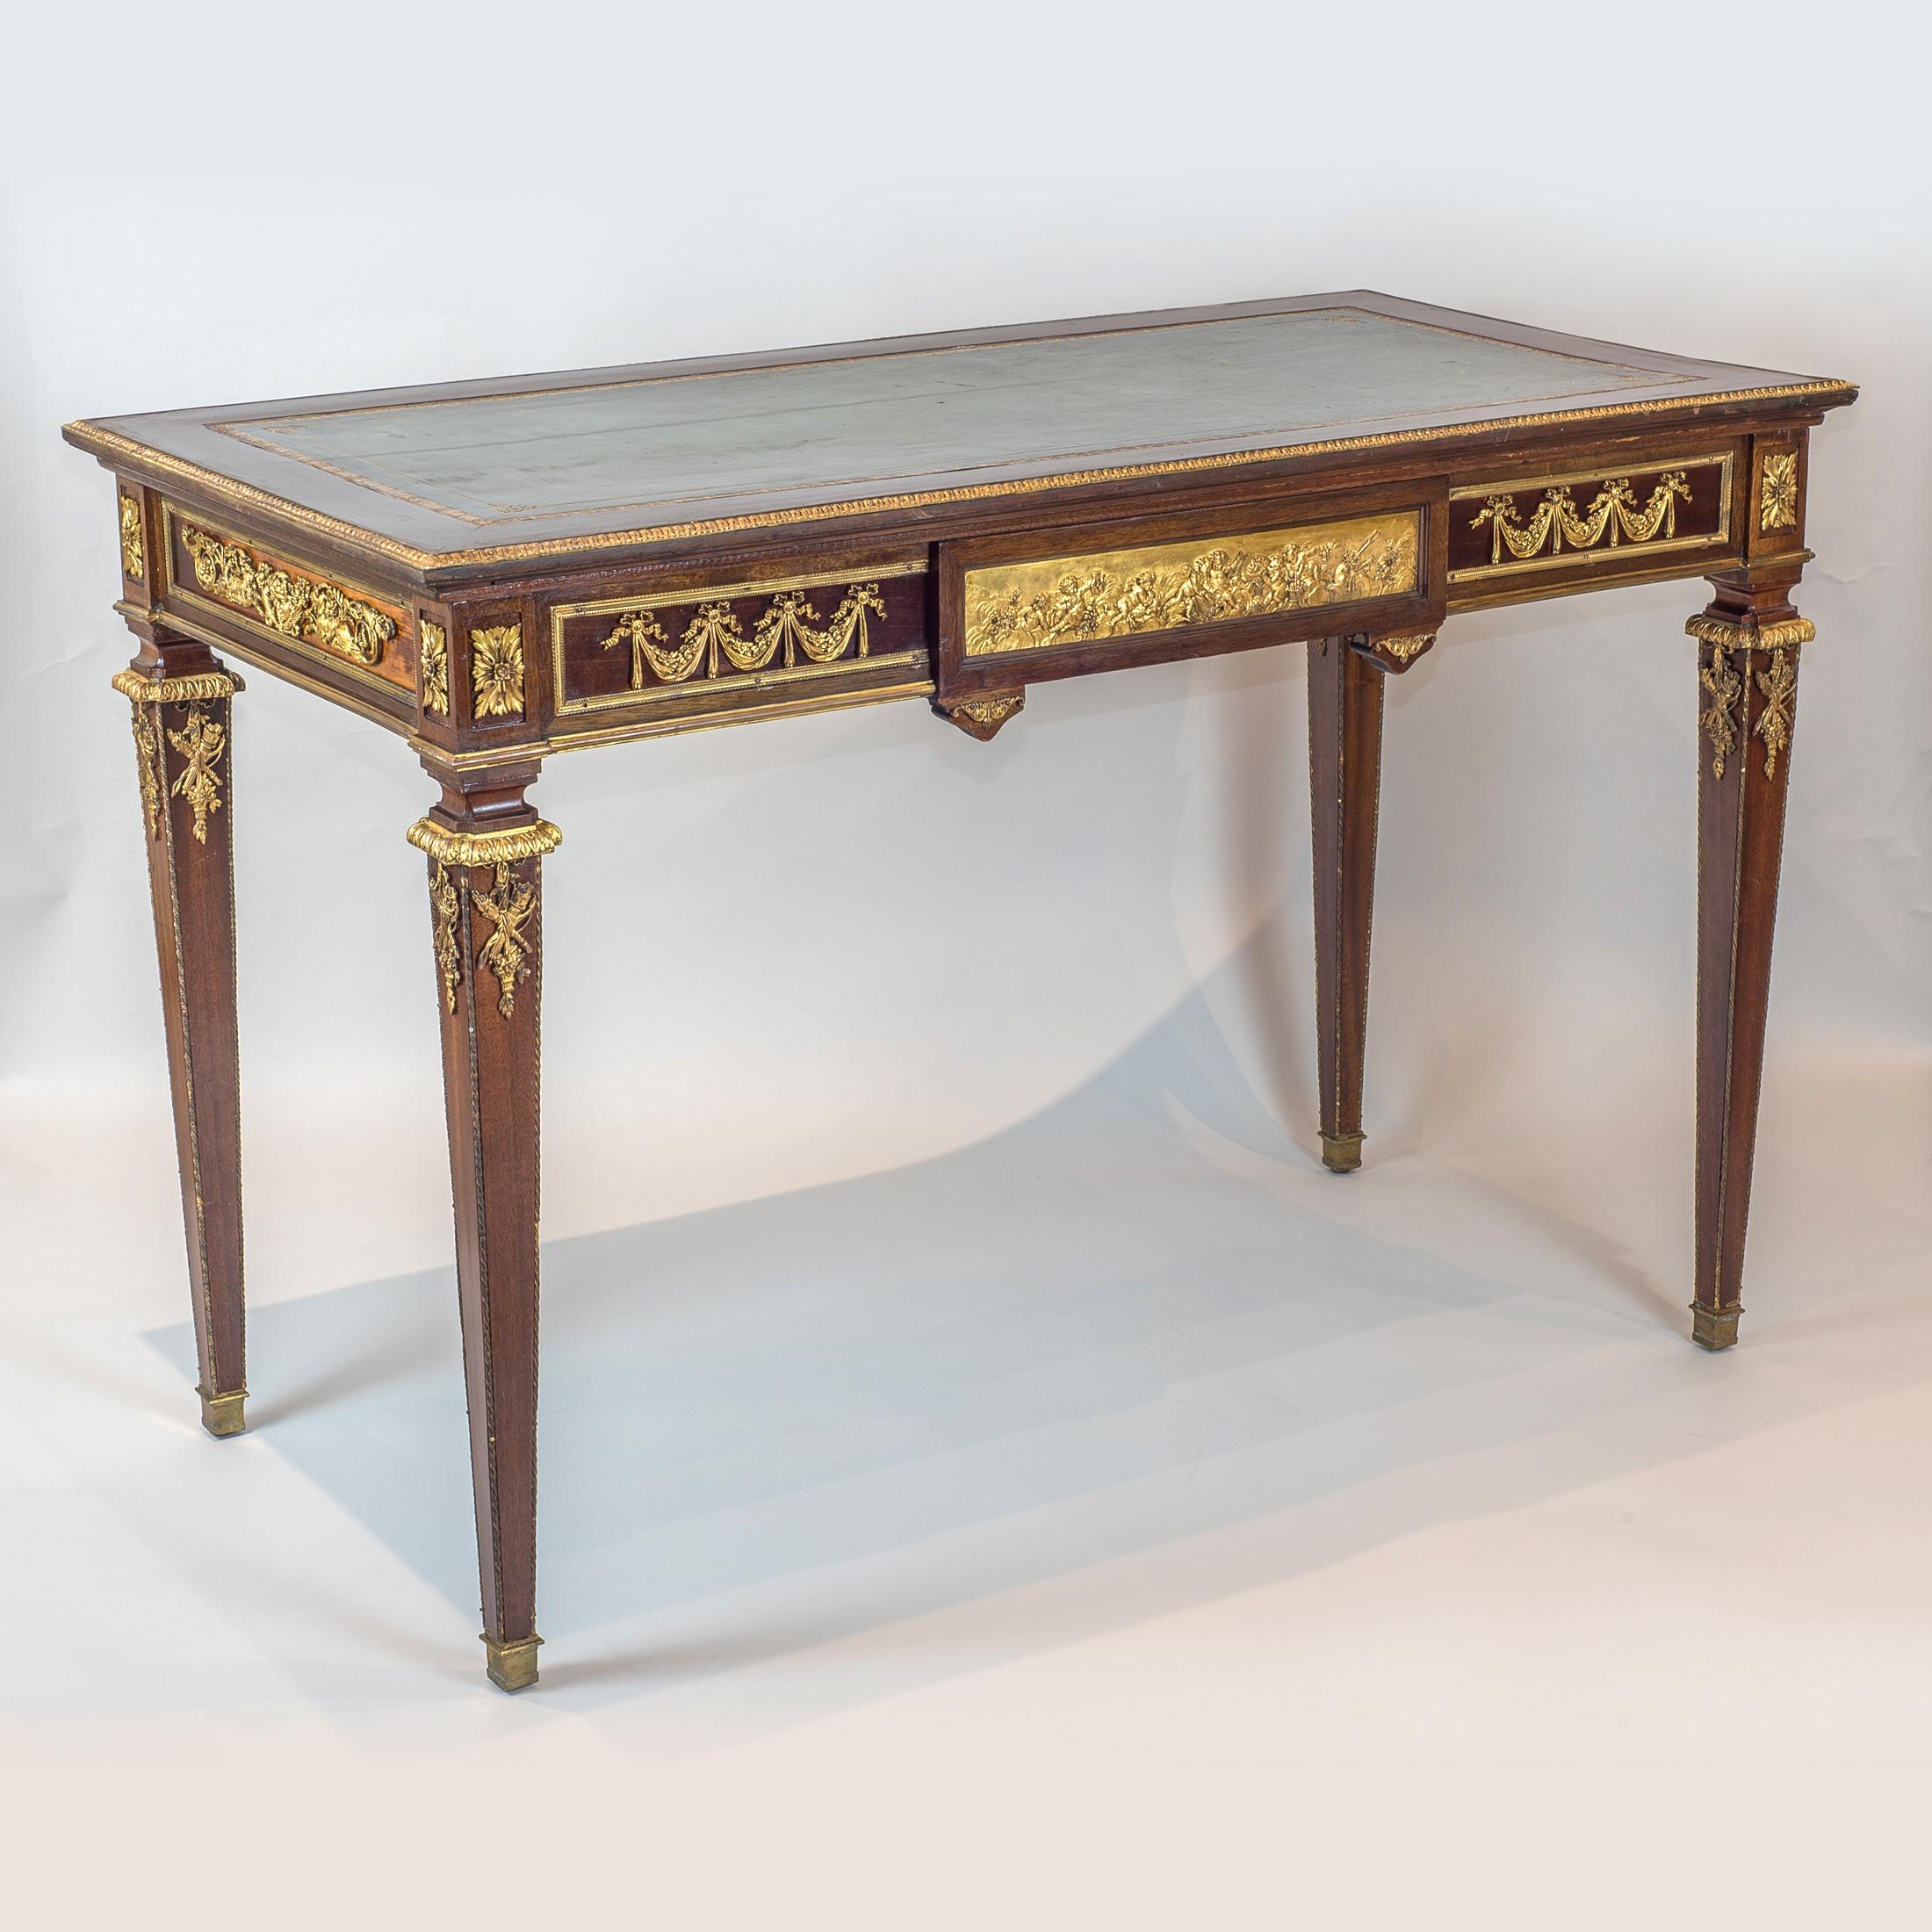 Beau bureau plat en acajou de style Louis XVI monté en bronze doré.

Origine : Français
Date : fin du 19ème siècle
Dimension : H 29 1/4 x L 44 x P 22 3/4.